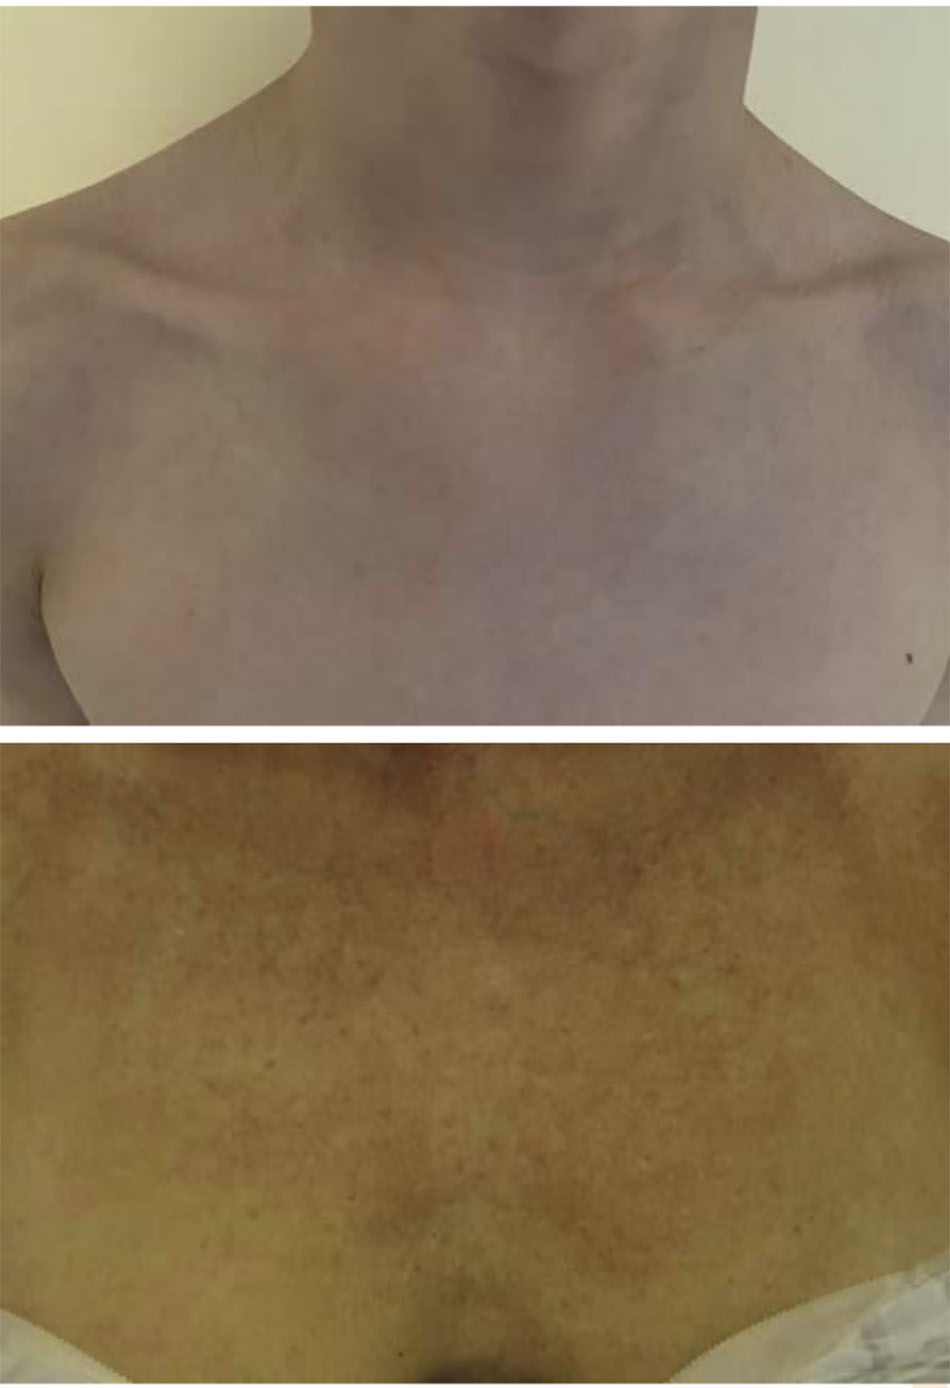 So sánh ngực “trẻ trung” (trên) với ngực “trưởng thành” (dưới) cho thấy những thay đổi do lão hóa, ánh nắng mặt trời và các yếu tố môi trường.